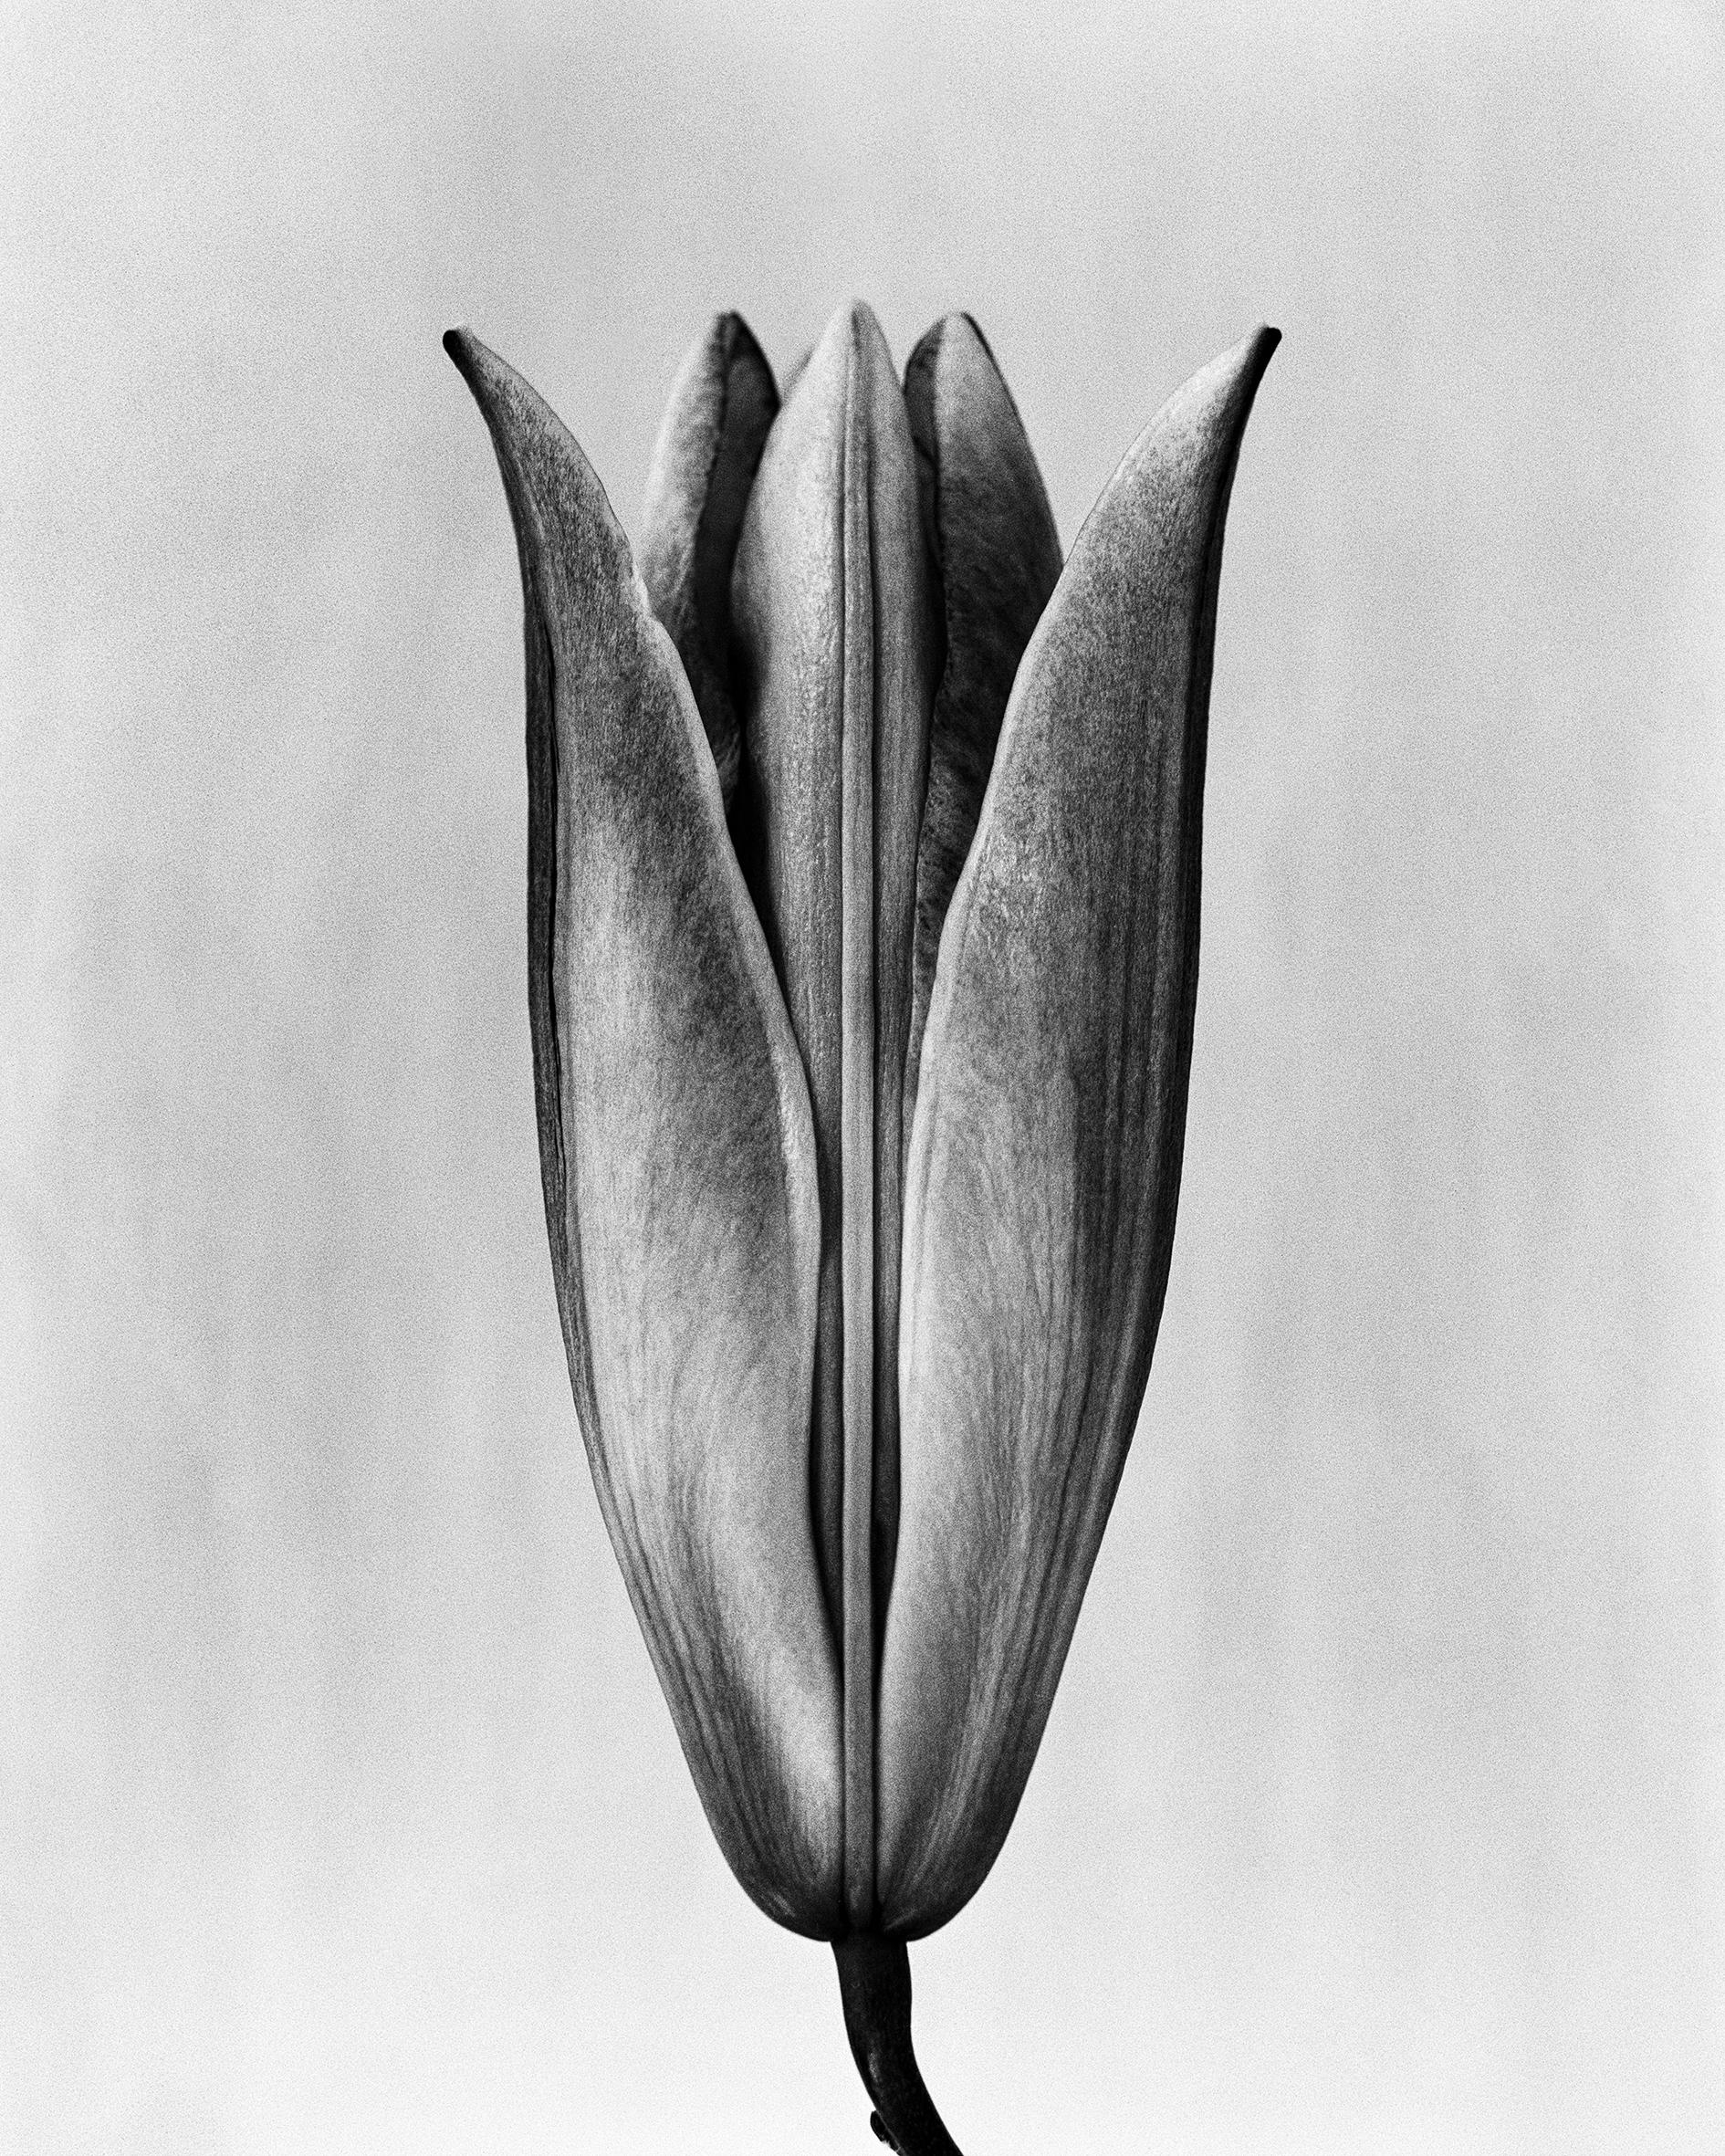 Lily '23 Schwarz-Weiß- analoge Blumenfotografie, Auflage von 10 Stück